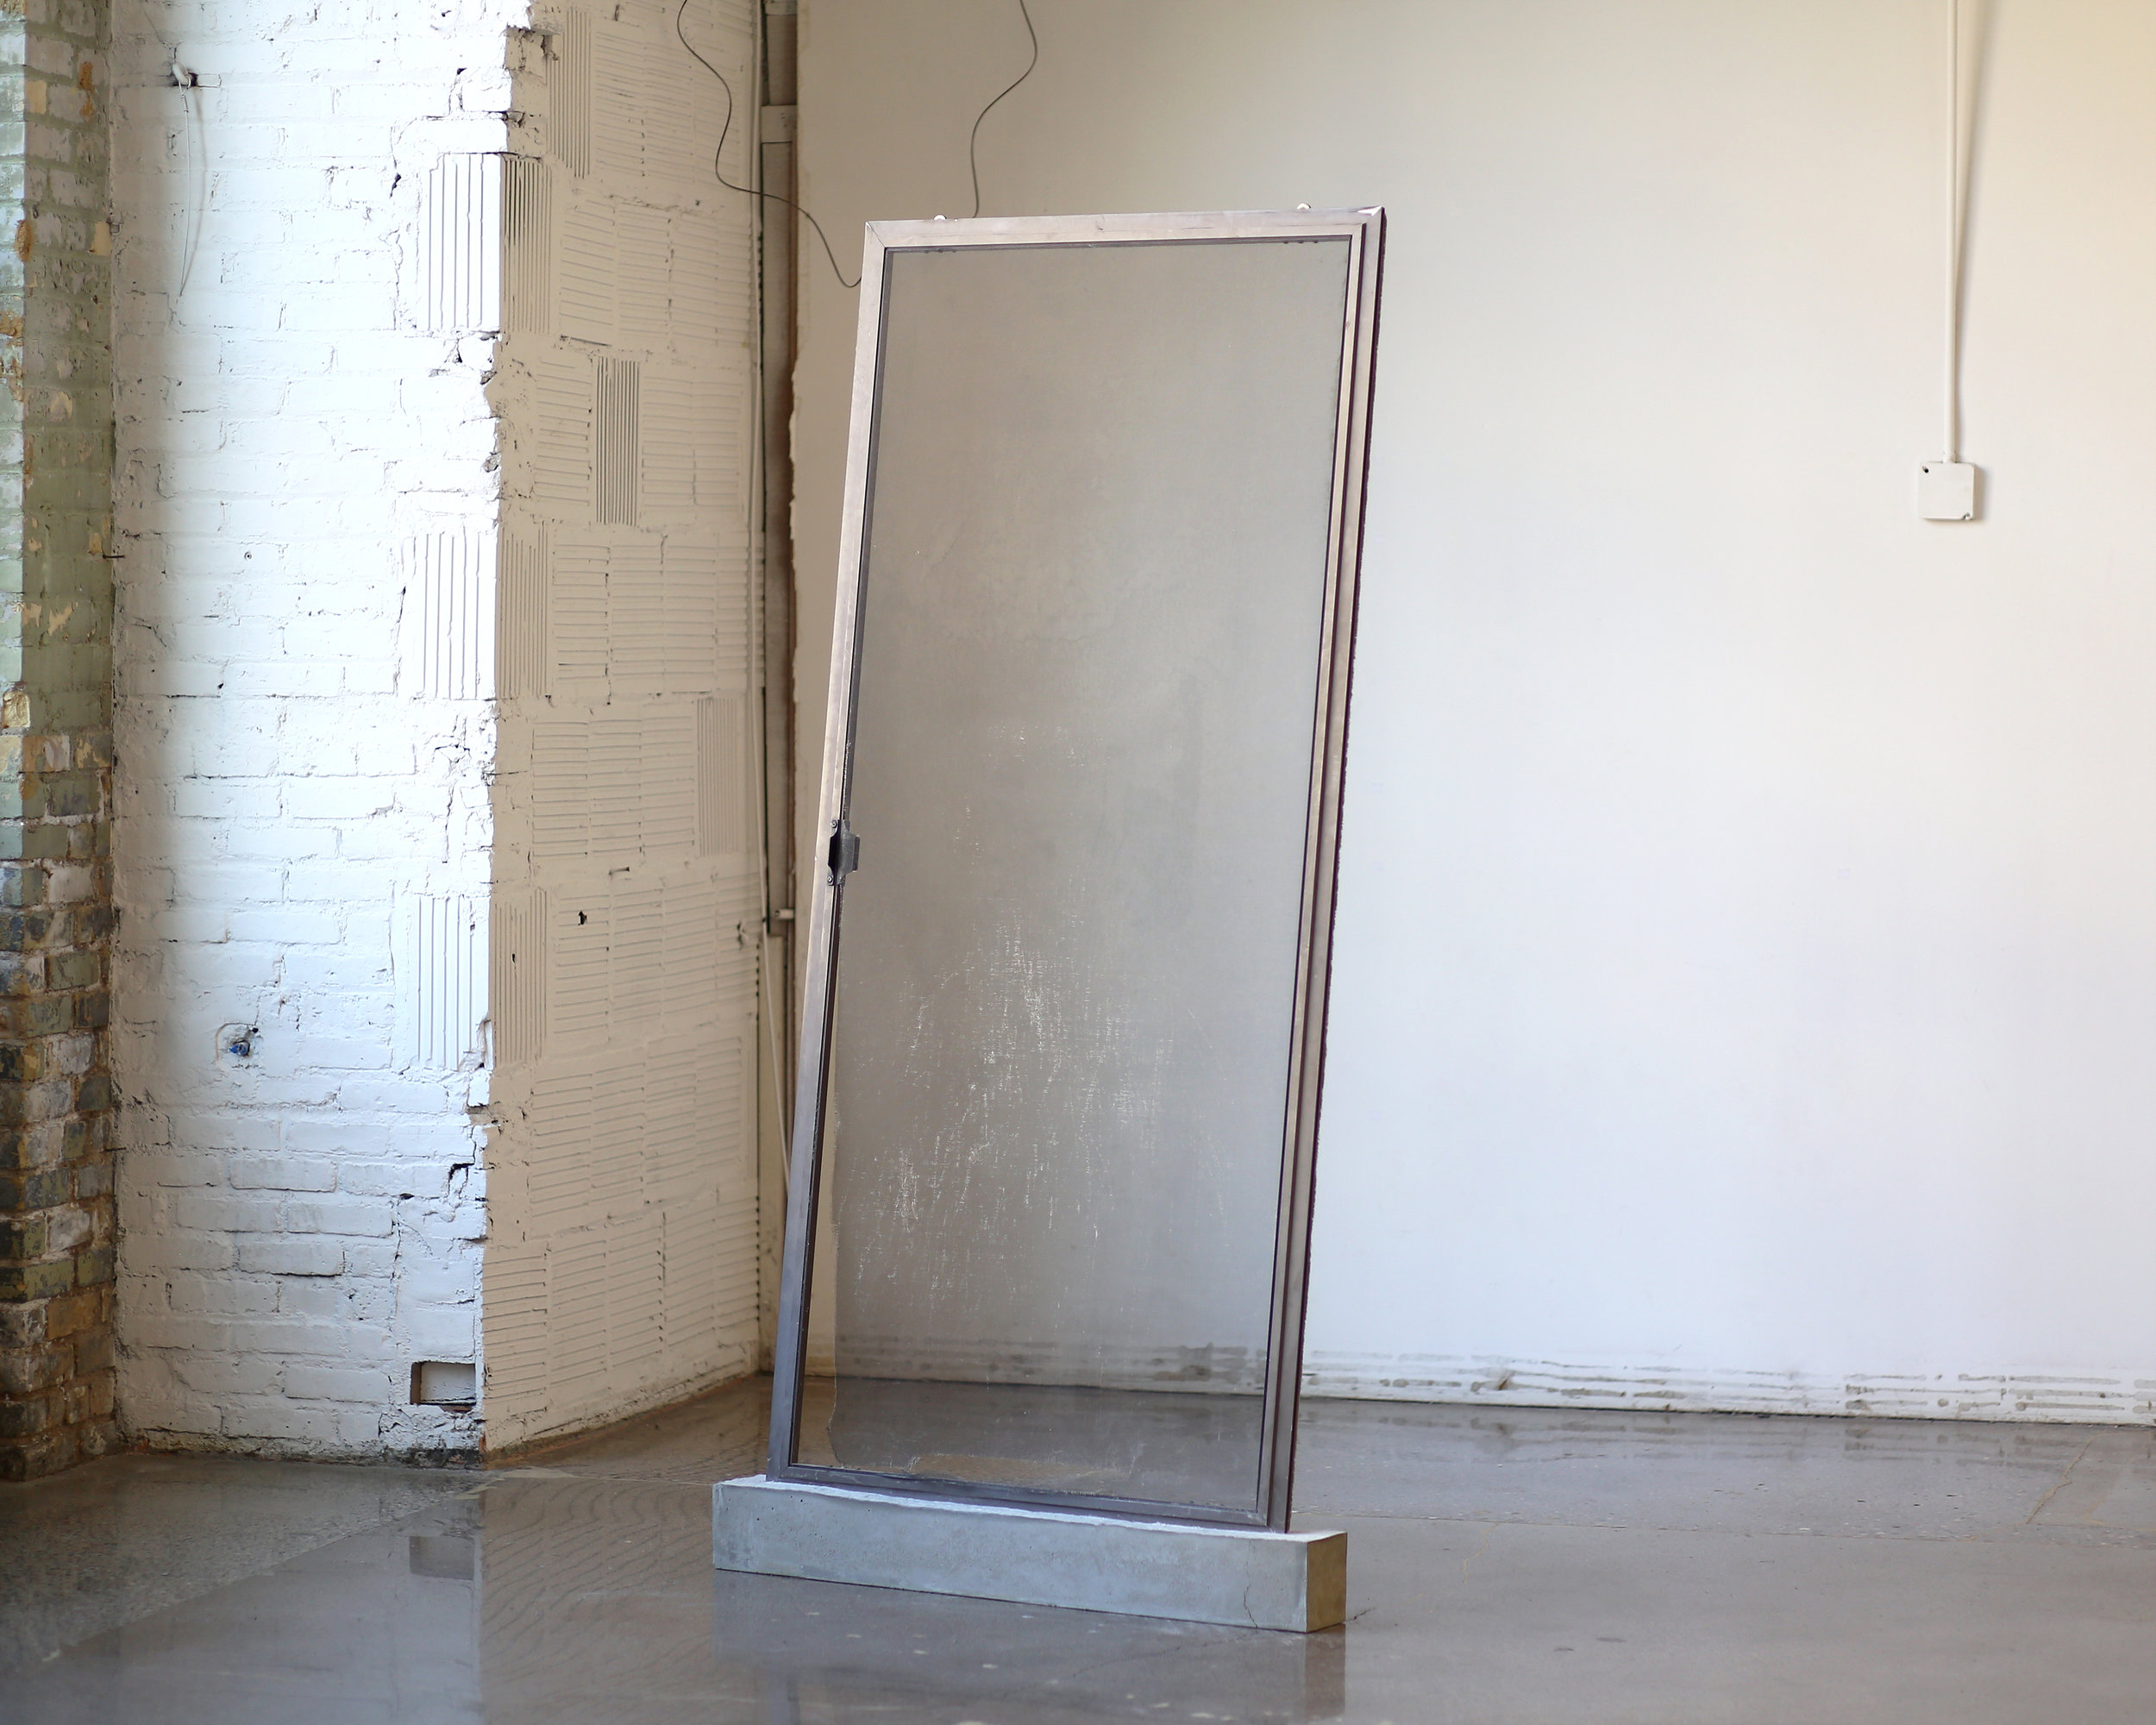   Untitled  Aluminum sliding door and concrete 85” x 43” x 5” 2018 